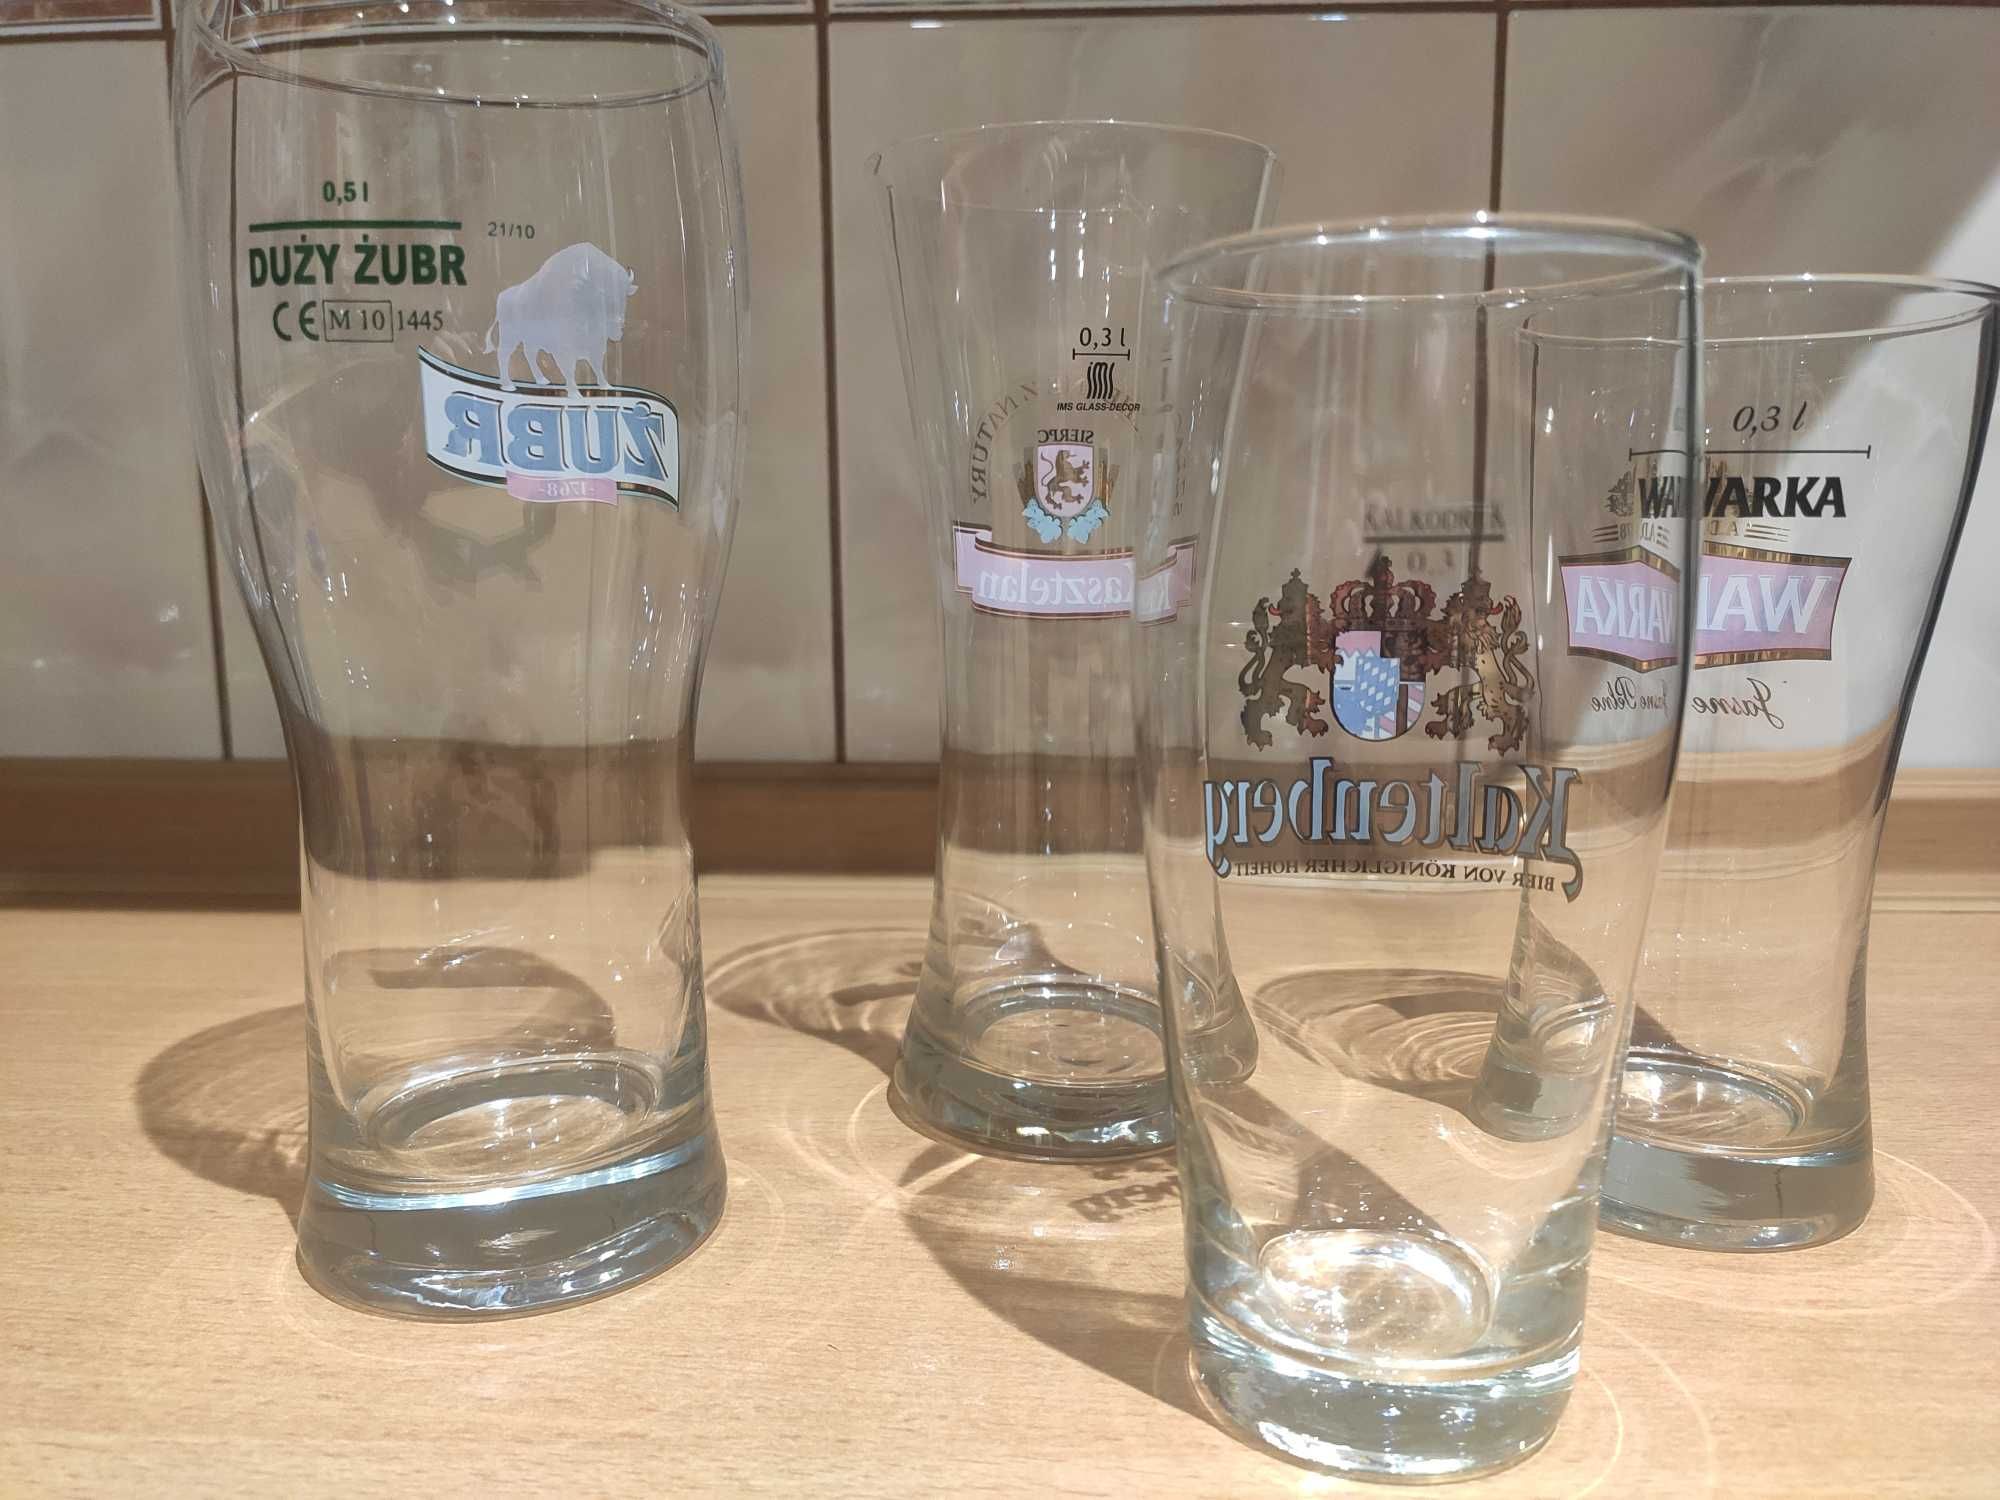 Szklanki do piwa Żubr, Kasztelan, Warka, Kaltenberg